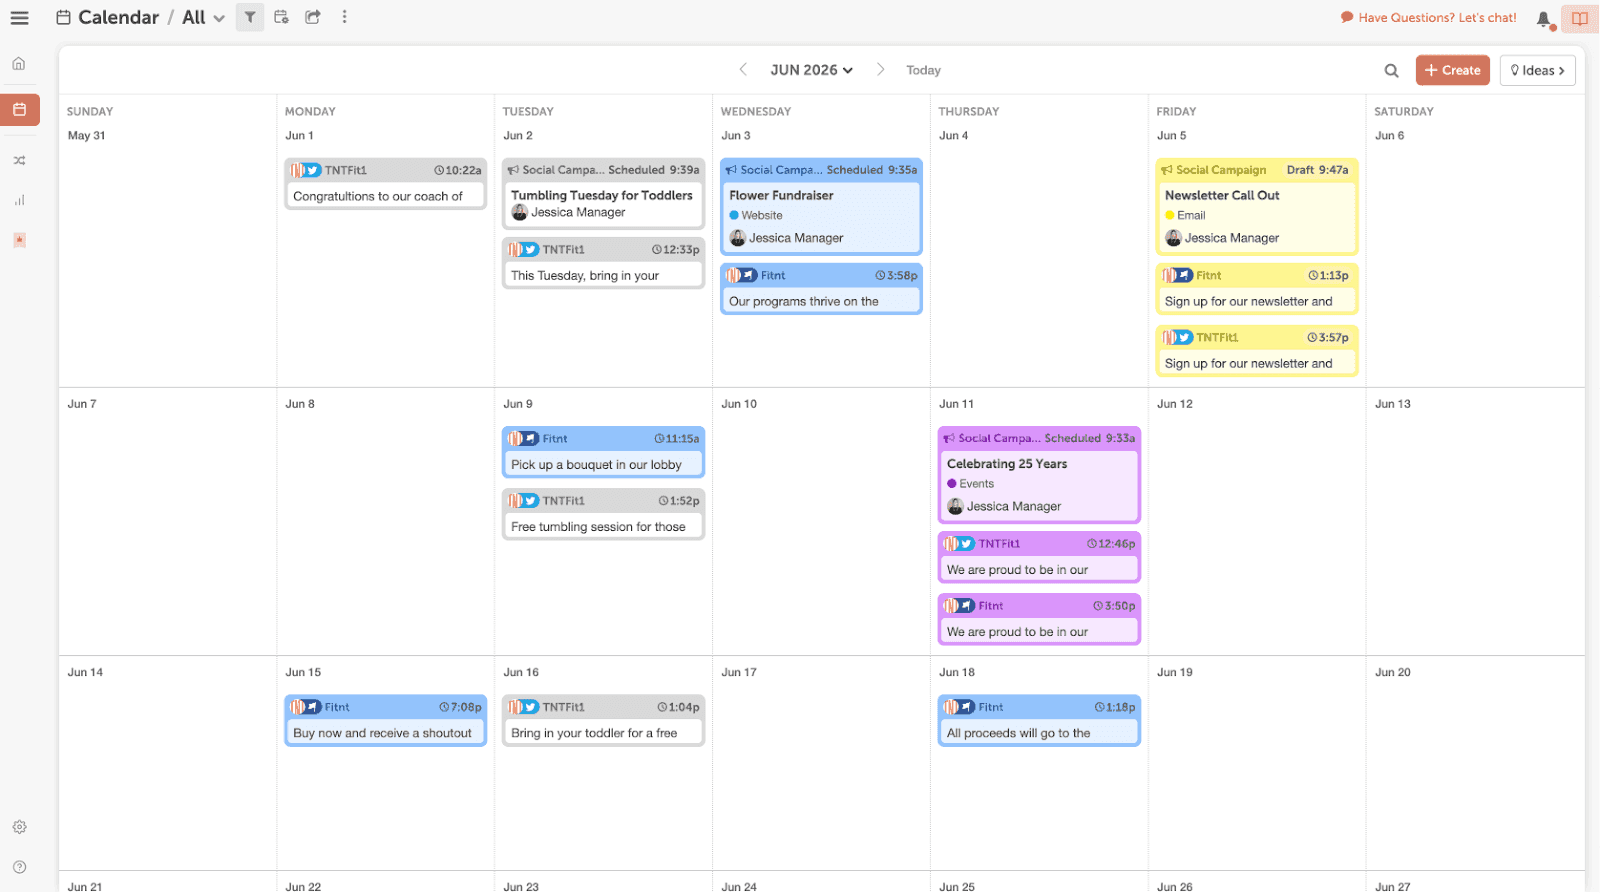 CoSchedule Content Calendar